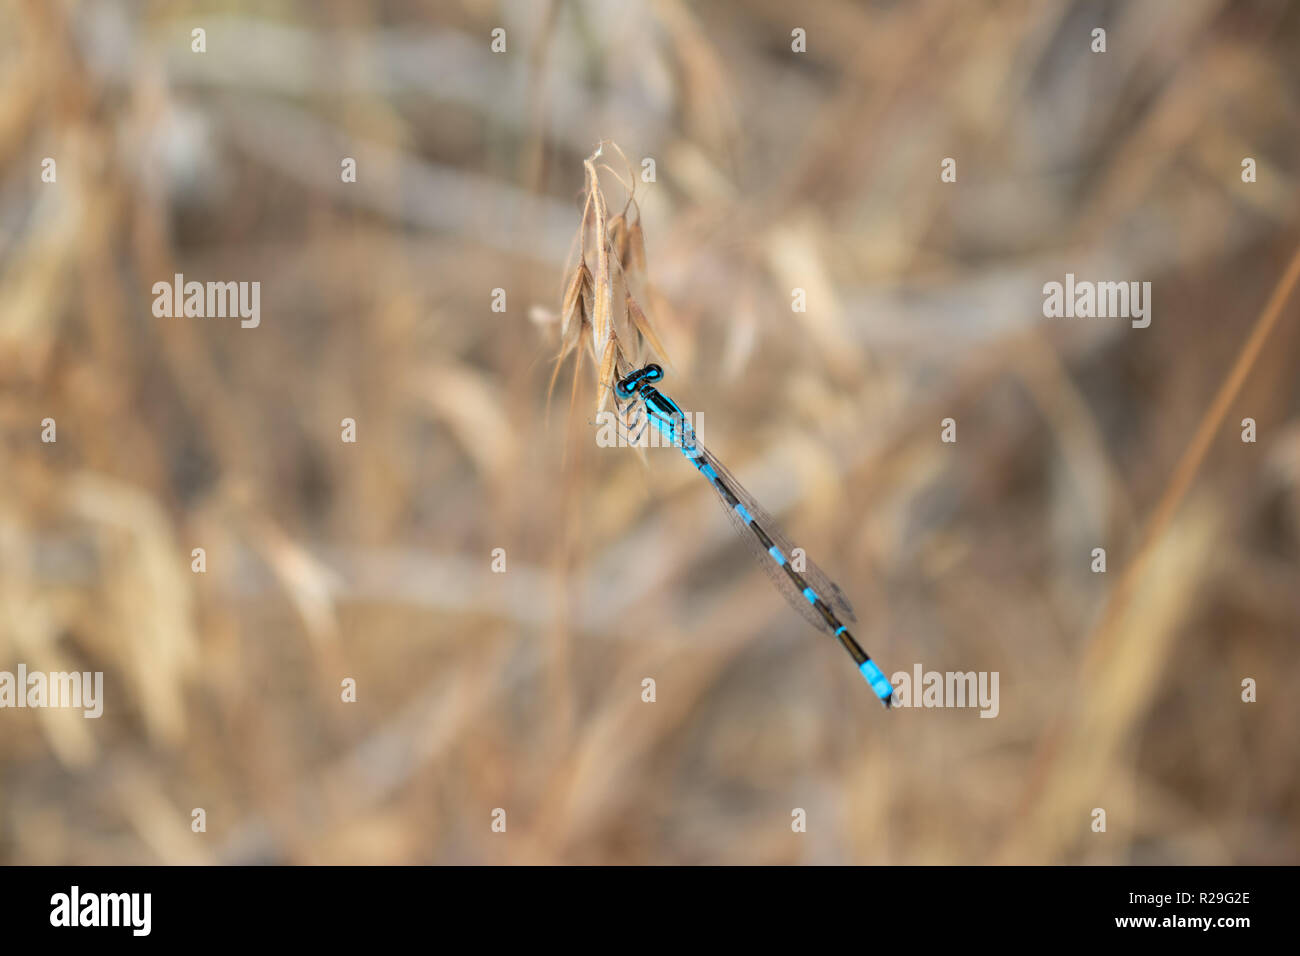 Dies ist ein Bild einer Libelle, die Landung auf einer toten Blume, die hat eine sehr verschwommenen Hintergrund mit der Libelle im Fokus ist. Stockfoto